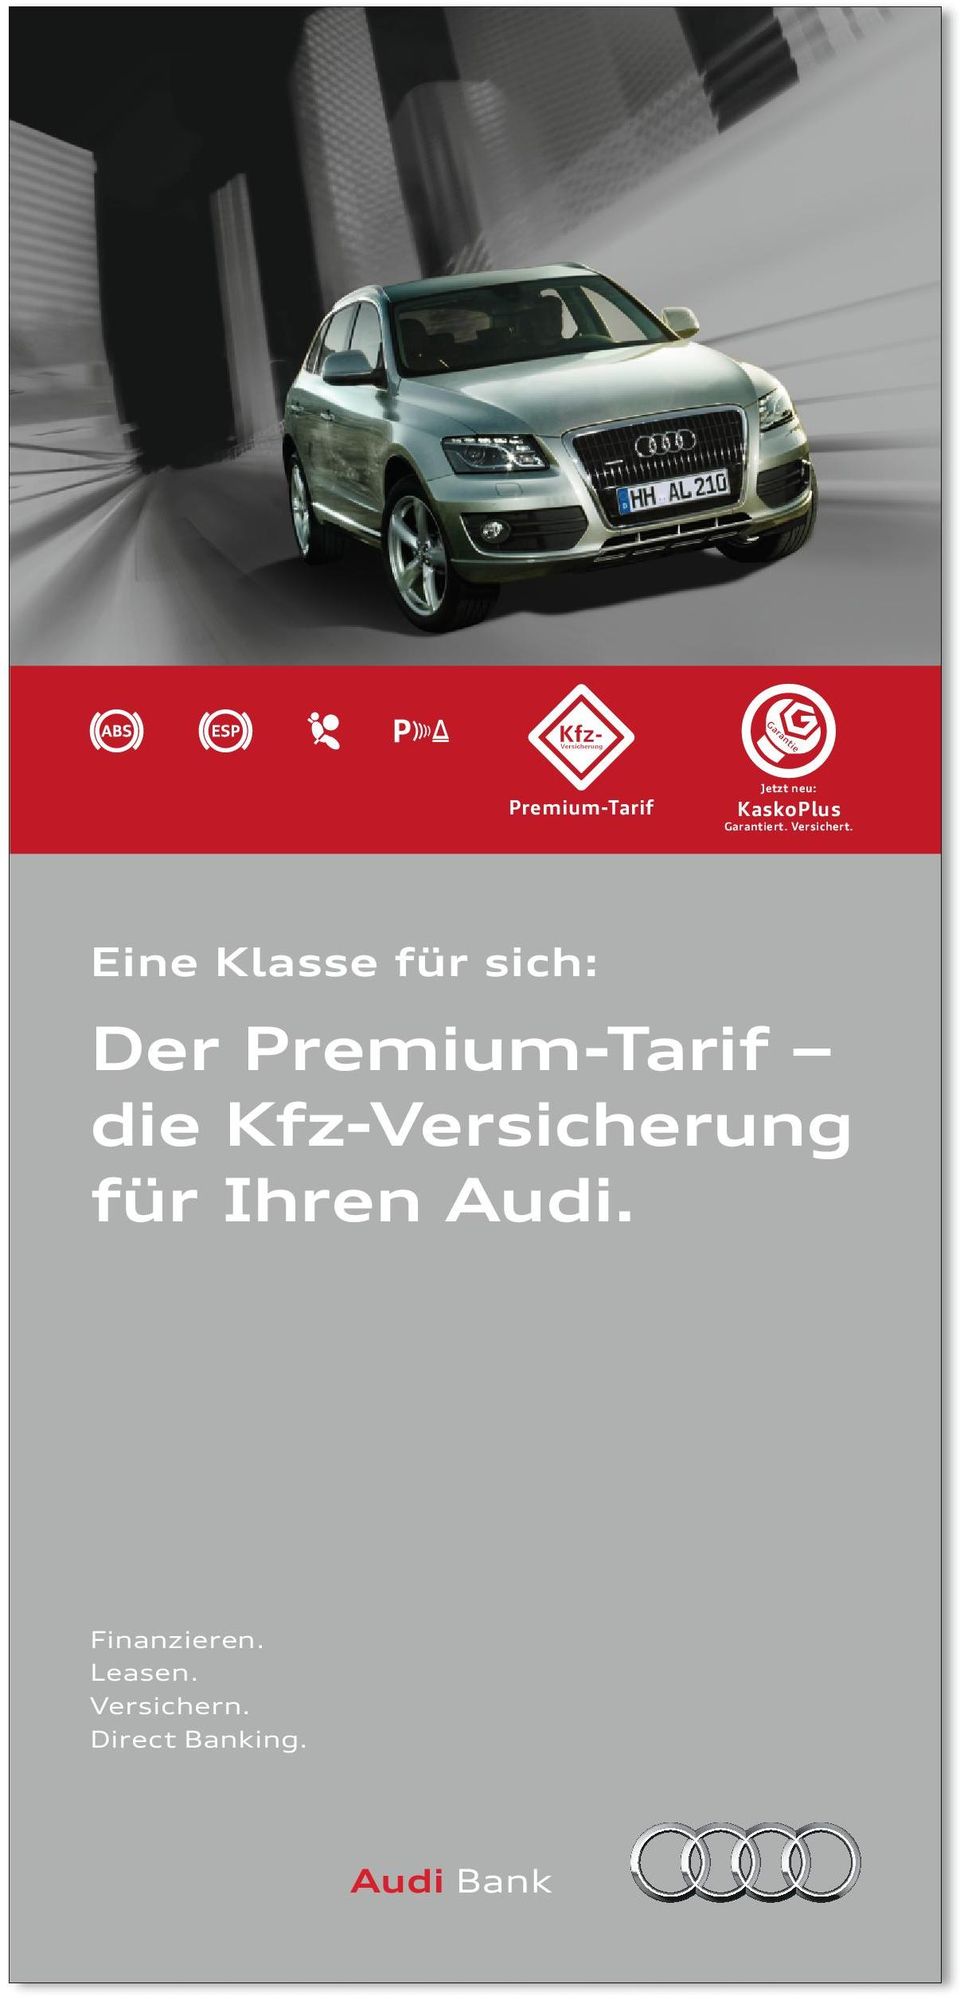 Kfz-Versicherung für Ihren Audi.